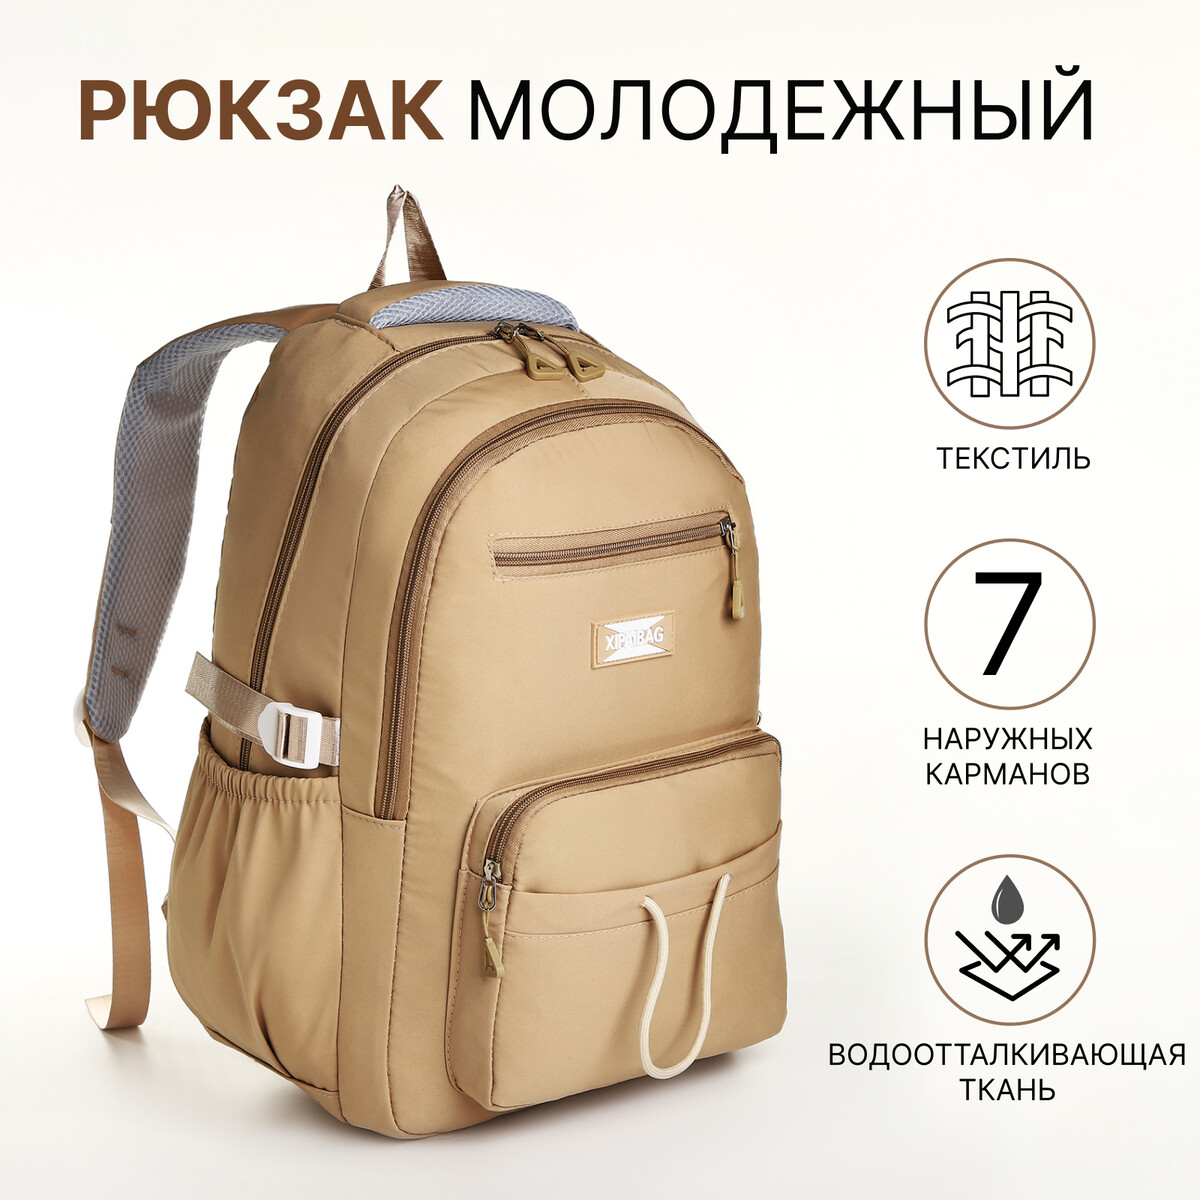 Рюкзак школьный из текстиля на молнии, 7 карманов, цвет коричневый рюкзак текстильный со шнуровкой fearless 38х29х11 см коричневый